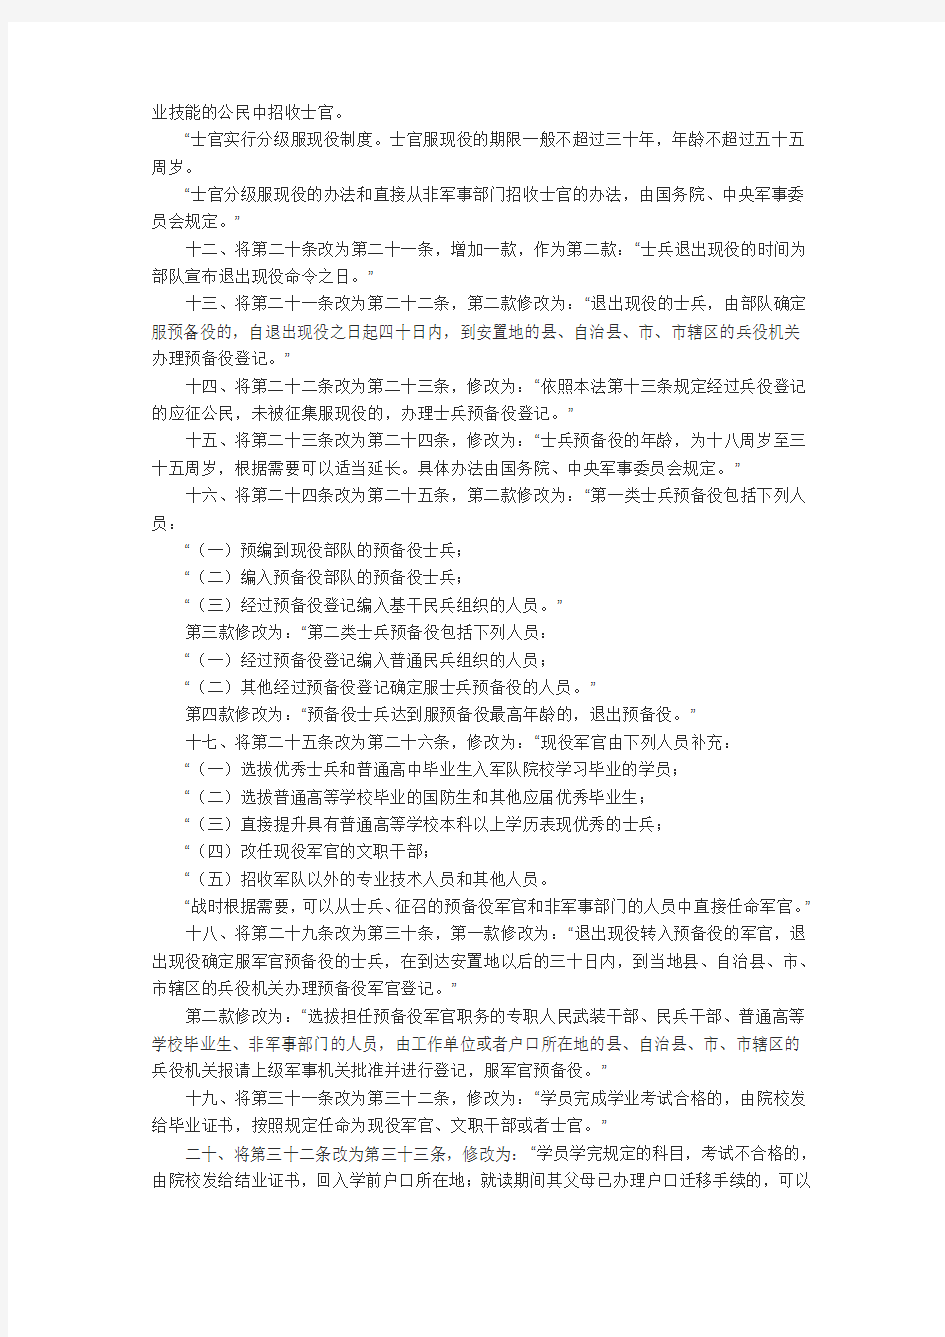 全国人民代表大会常务委员会关于修改《中华人民共和国兵役法》的决定